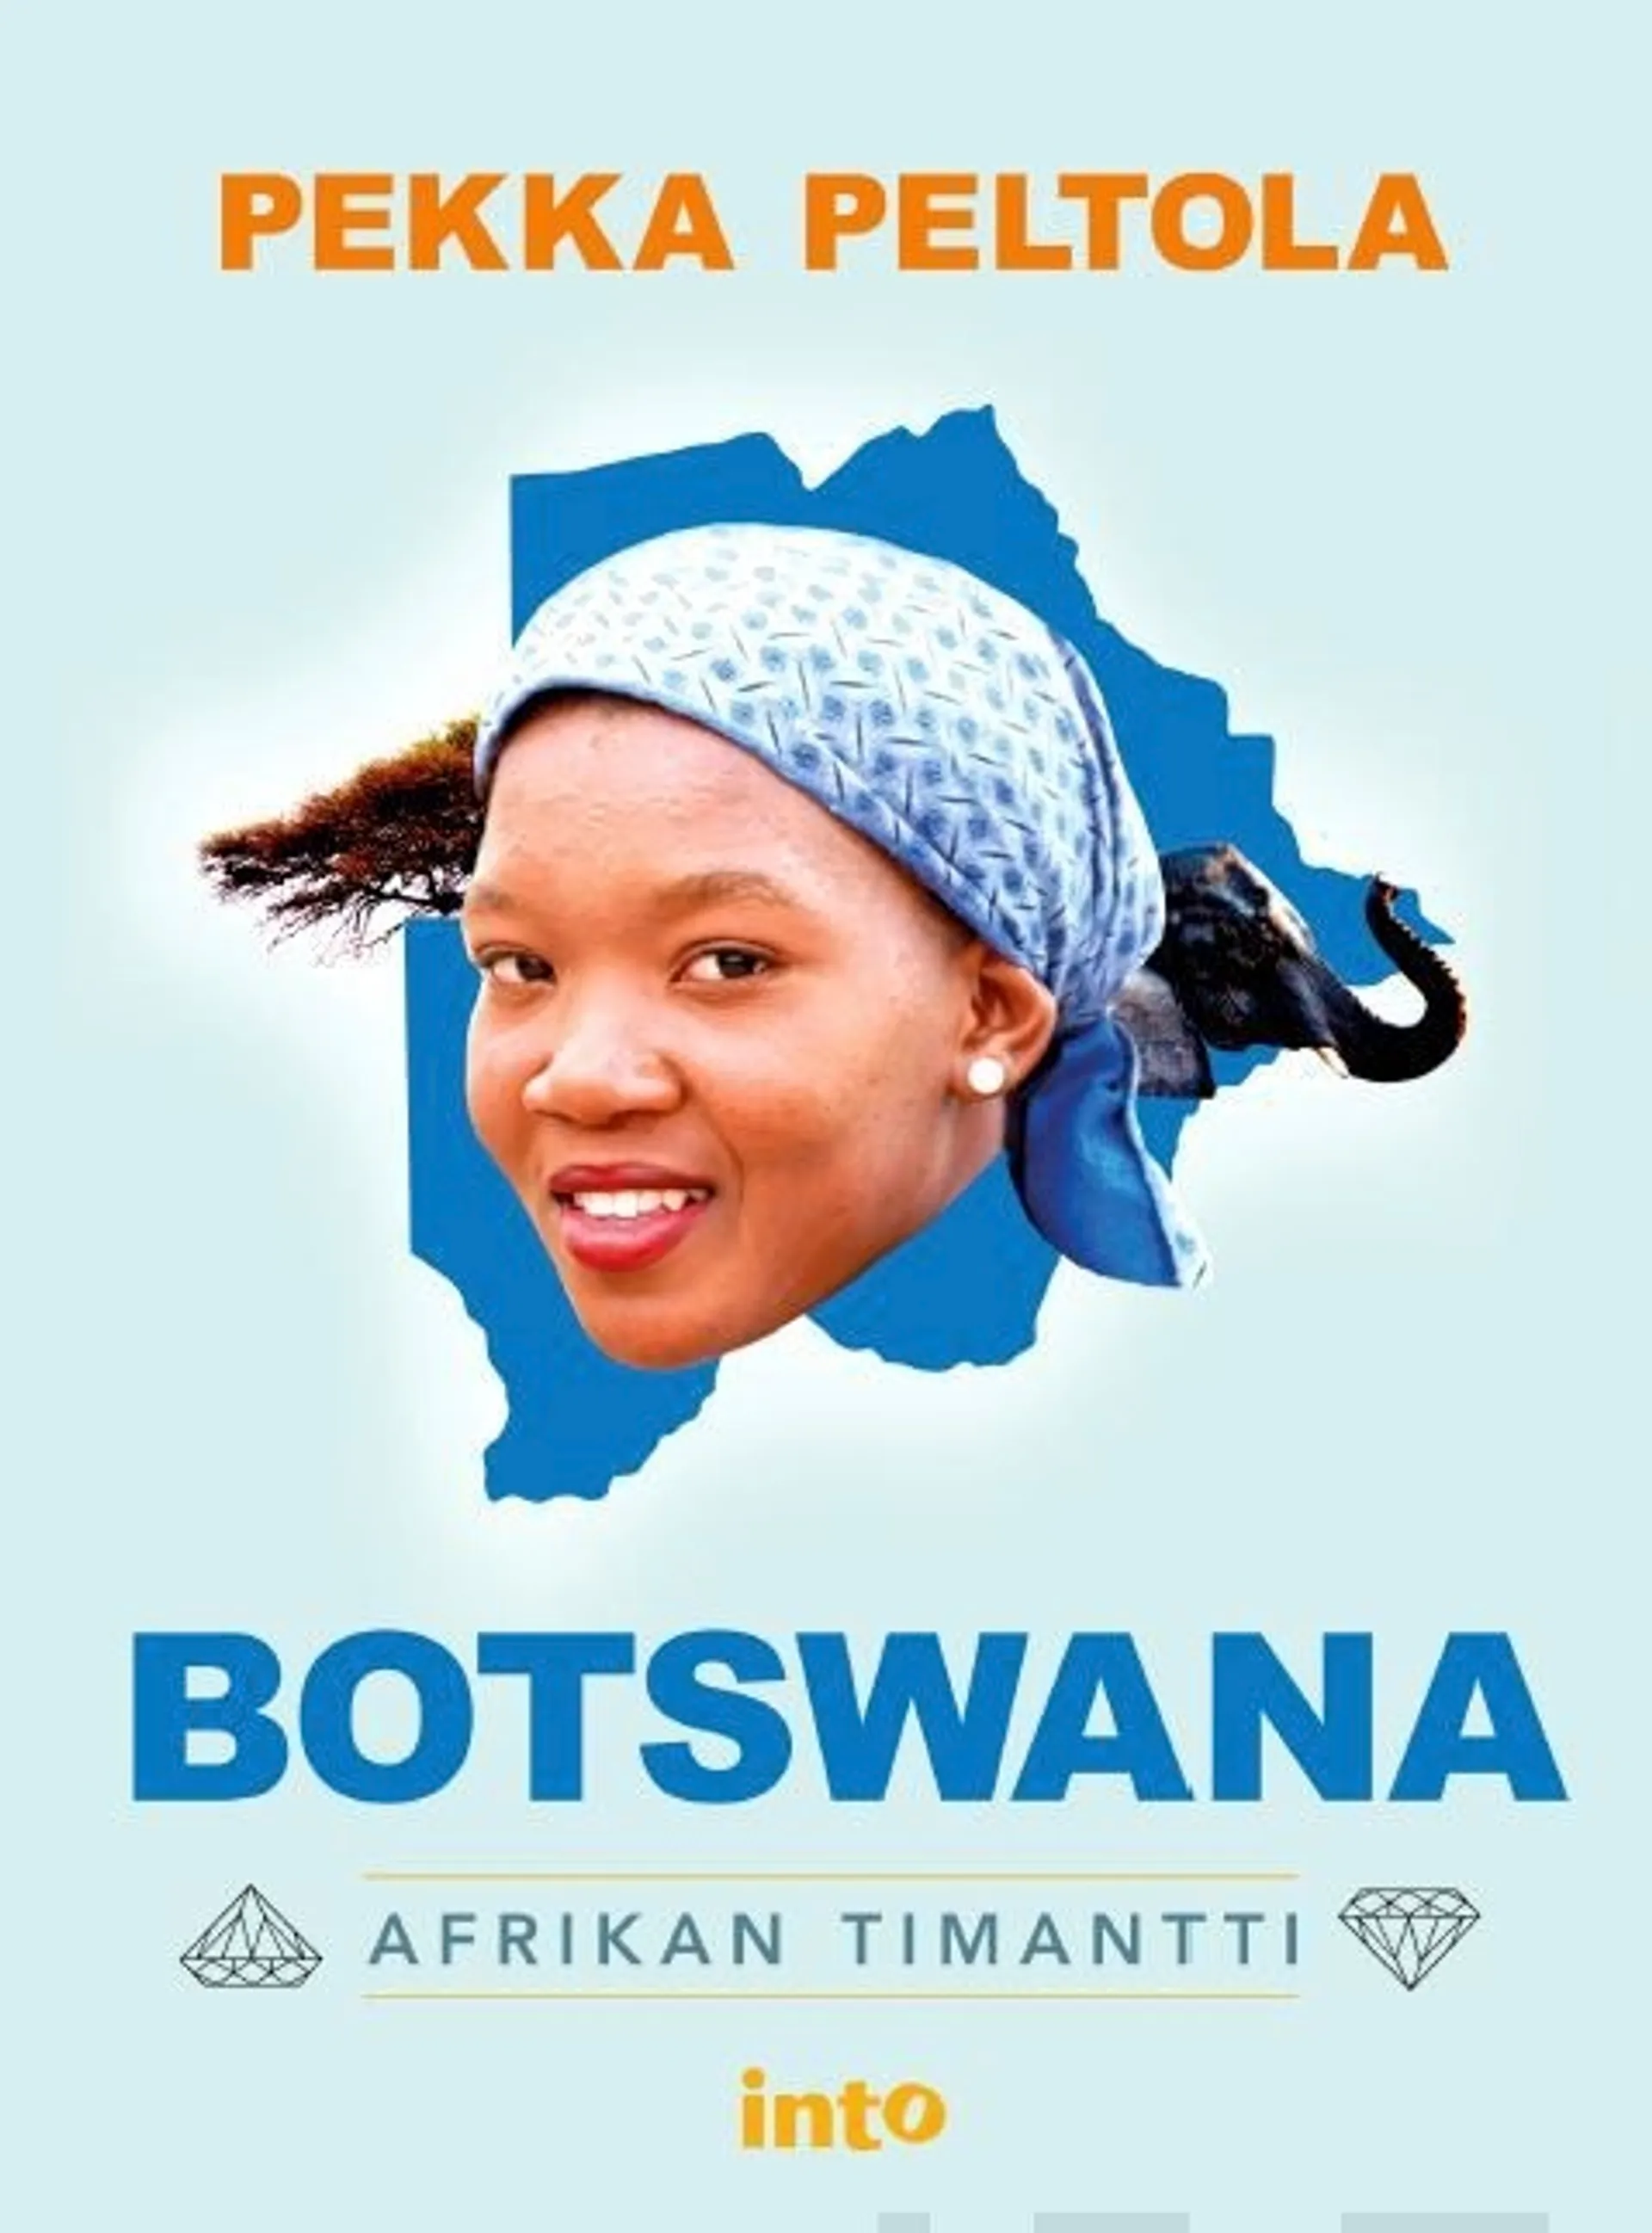 Peltola, Botswana - Afrikan timantti